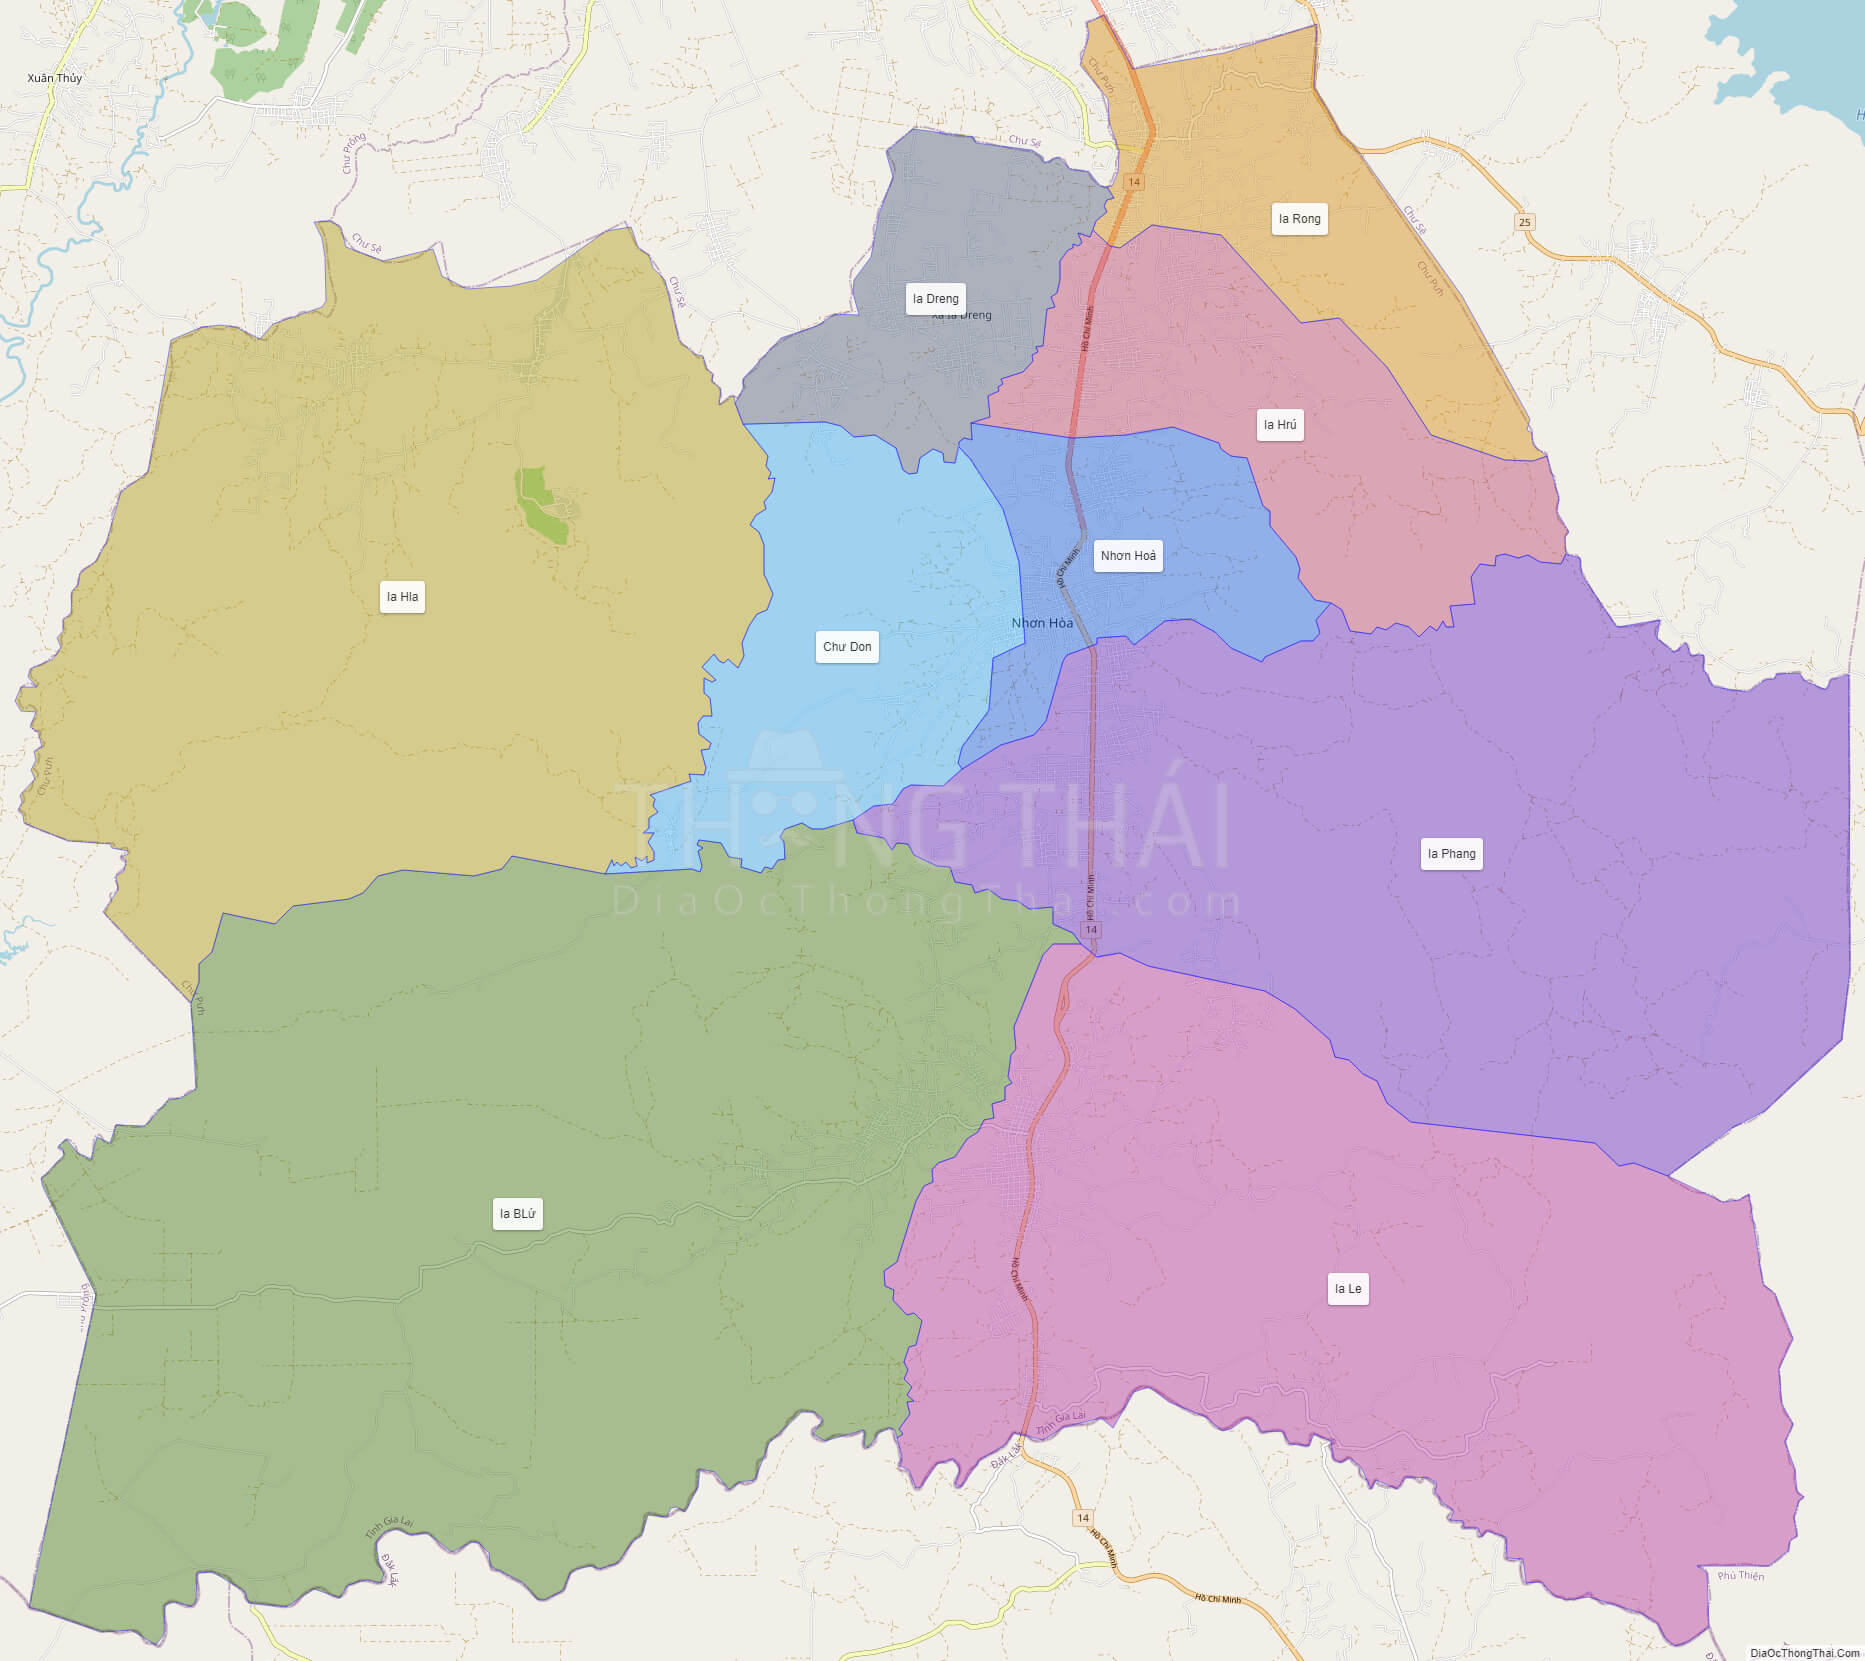 Bản đồ huyện Chư Pưh - Gia Lai - Địa Ốc Thông Thái 2024 - bản đồ huyện Chư Pưh - Gia Lai.
Huyện Chư Pưh - Gia Lai là một trong những vùng đất đáng sống và đầy tiềm năng. Với bản đồ huyện Chư Pưh được cập nhật đến năm 2024 này, bạn sẽ hiểu rõ hơn về sự phát triển của huyện này. Hãy cùng đến với chúng tôi và khám phá sự đa dạng và đẹp đẽ của vùng đất này.